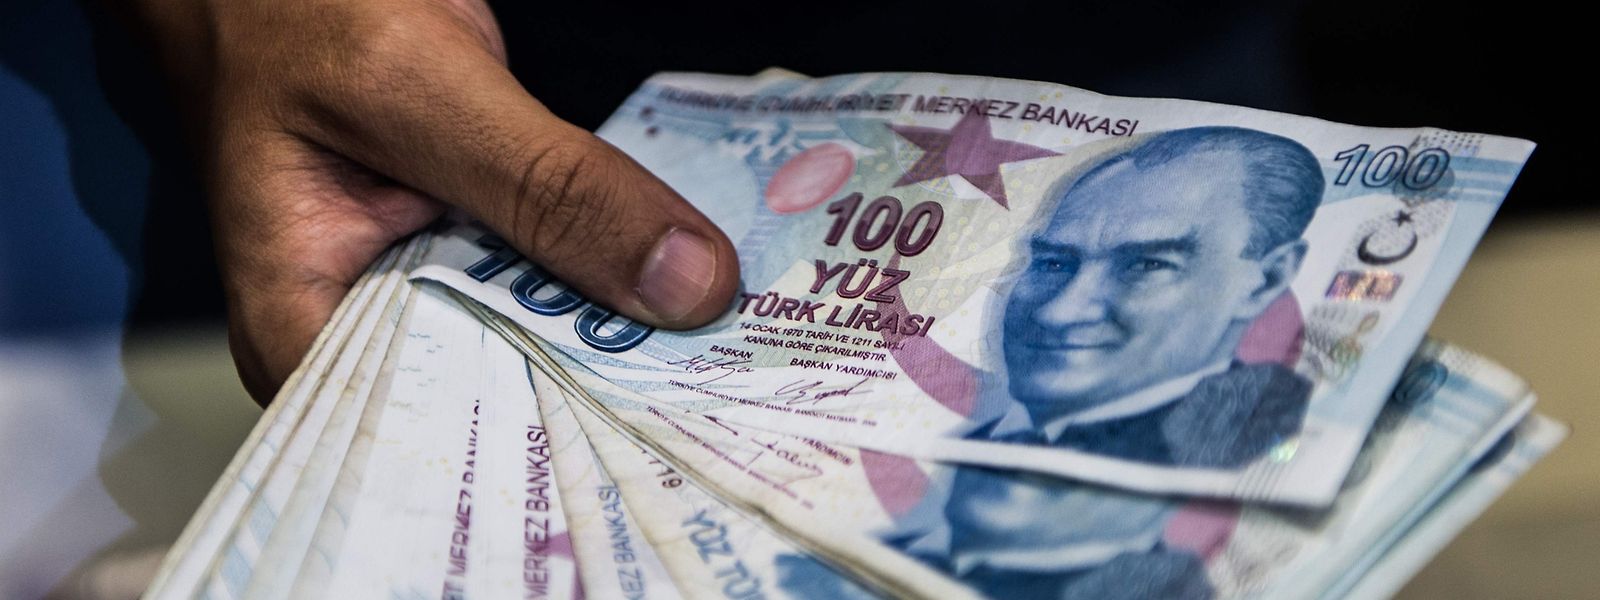 Die türkische Lira hat sich nach den heftigen Kursverlusten wieder etwas erholt. Experten warnen jedoch, dass es noch zu früh sei, um Entwarnung zu geben.